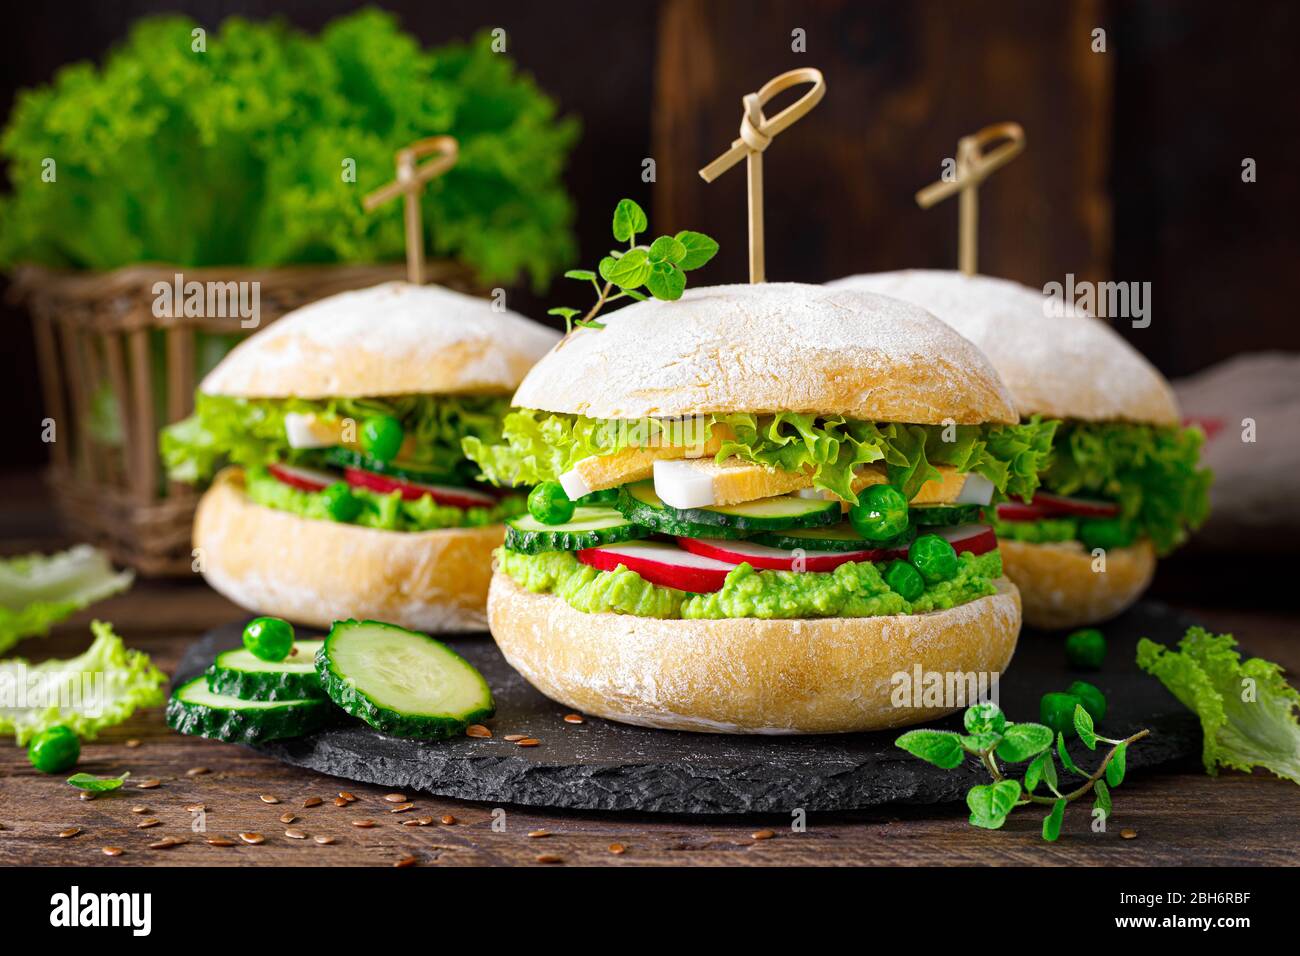 Hamburger avec pain pain pain à pain ciabatta maison, œufs durs, radis, concombre, salade de laitue et purée de petits pois verts frais Banque D'Images